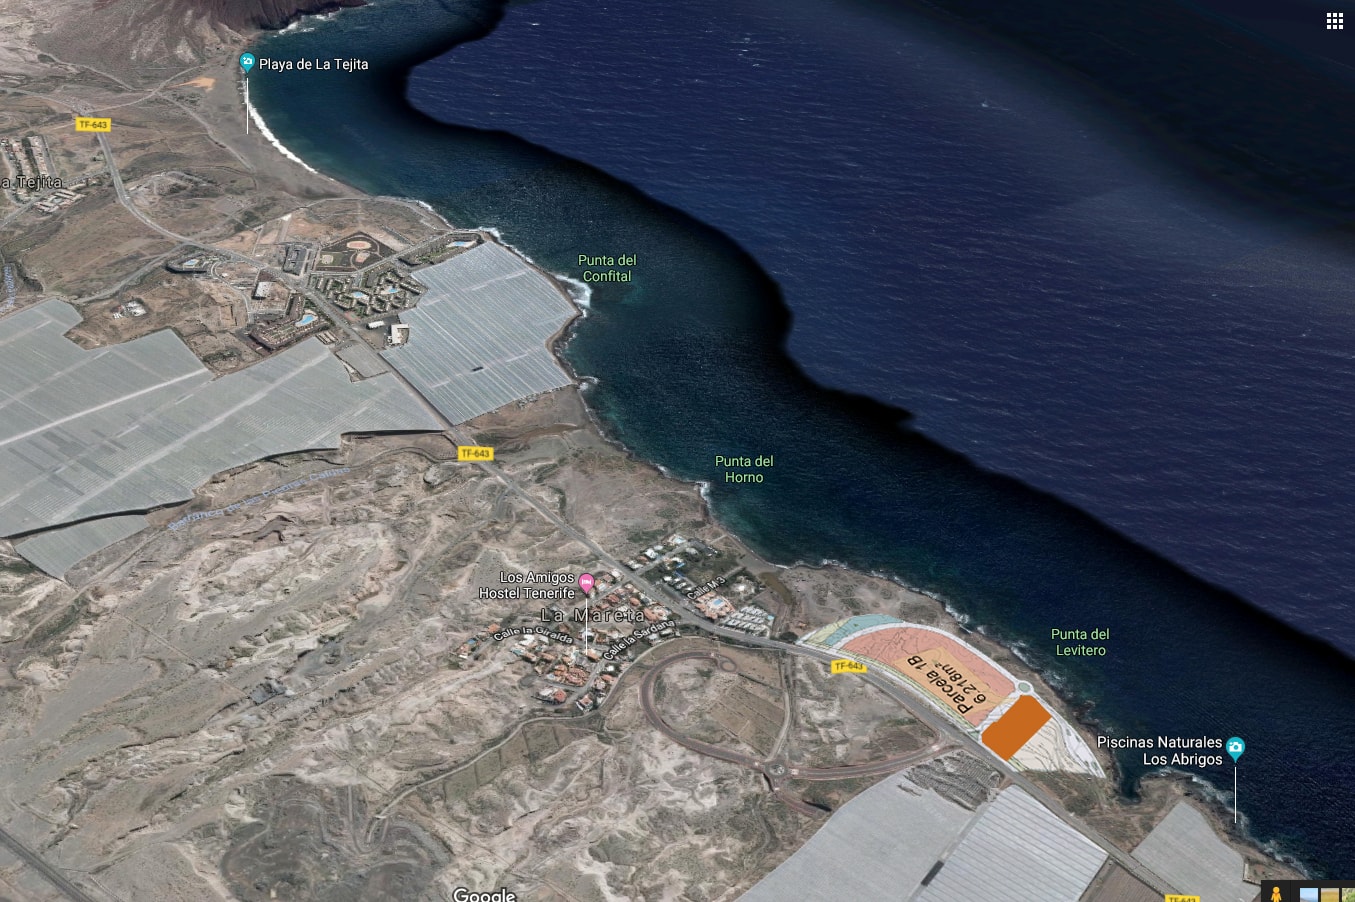 Costas abre un procedimiento para desmantelar las chabolas de Punta del Levitero